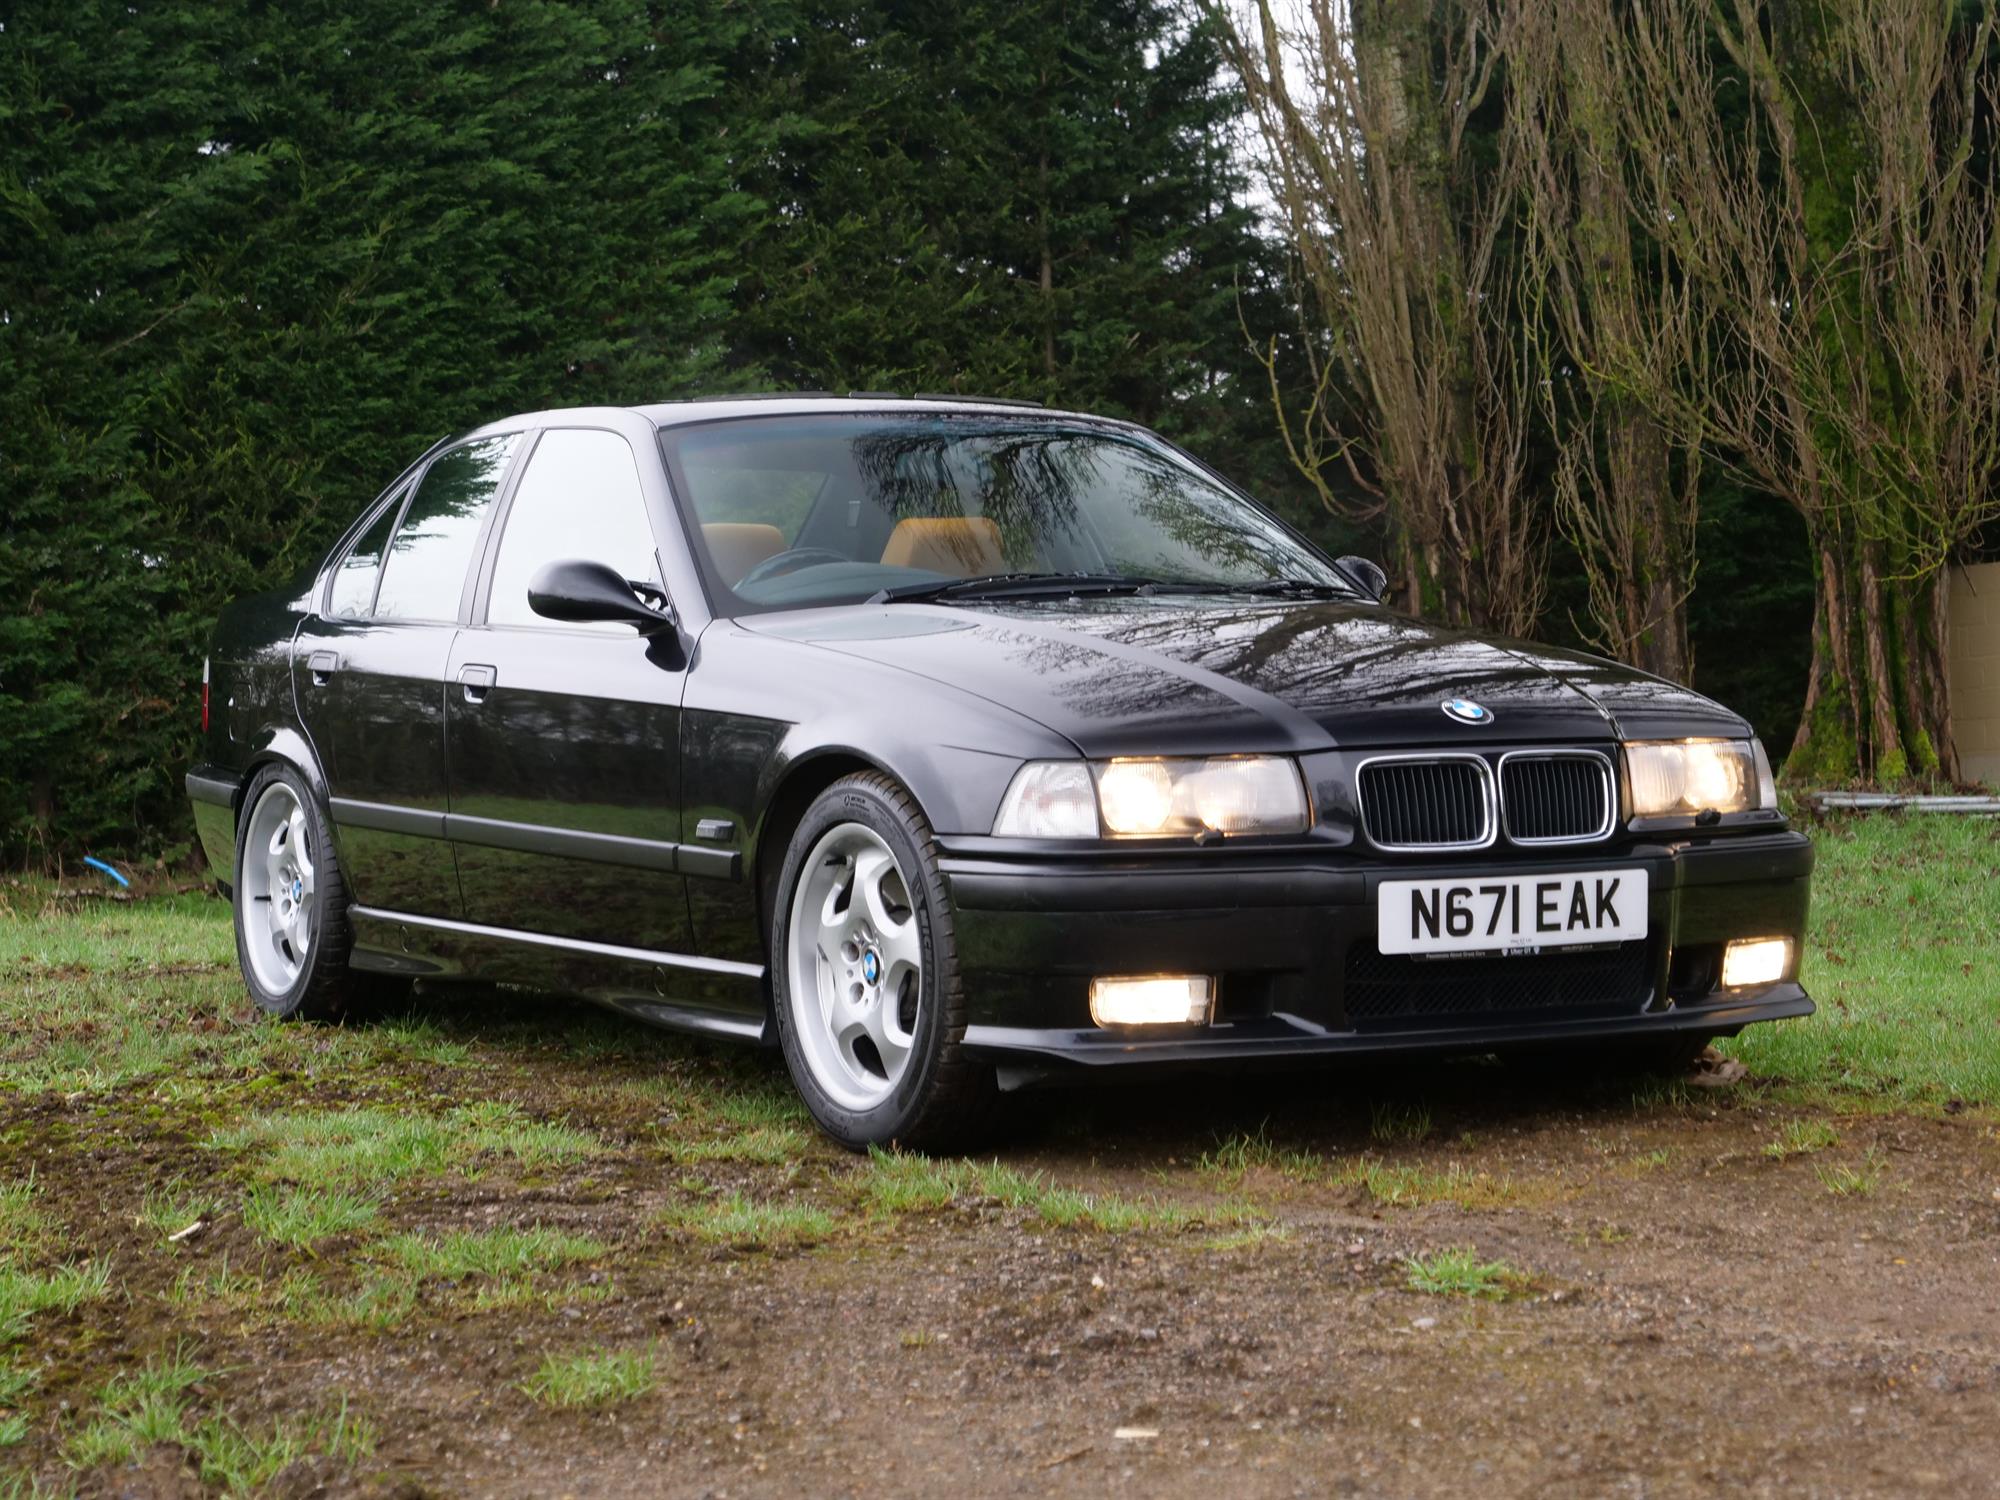 1996 BMW M3 Evolution (E36) - Image 10 of 18